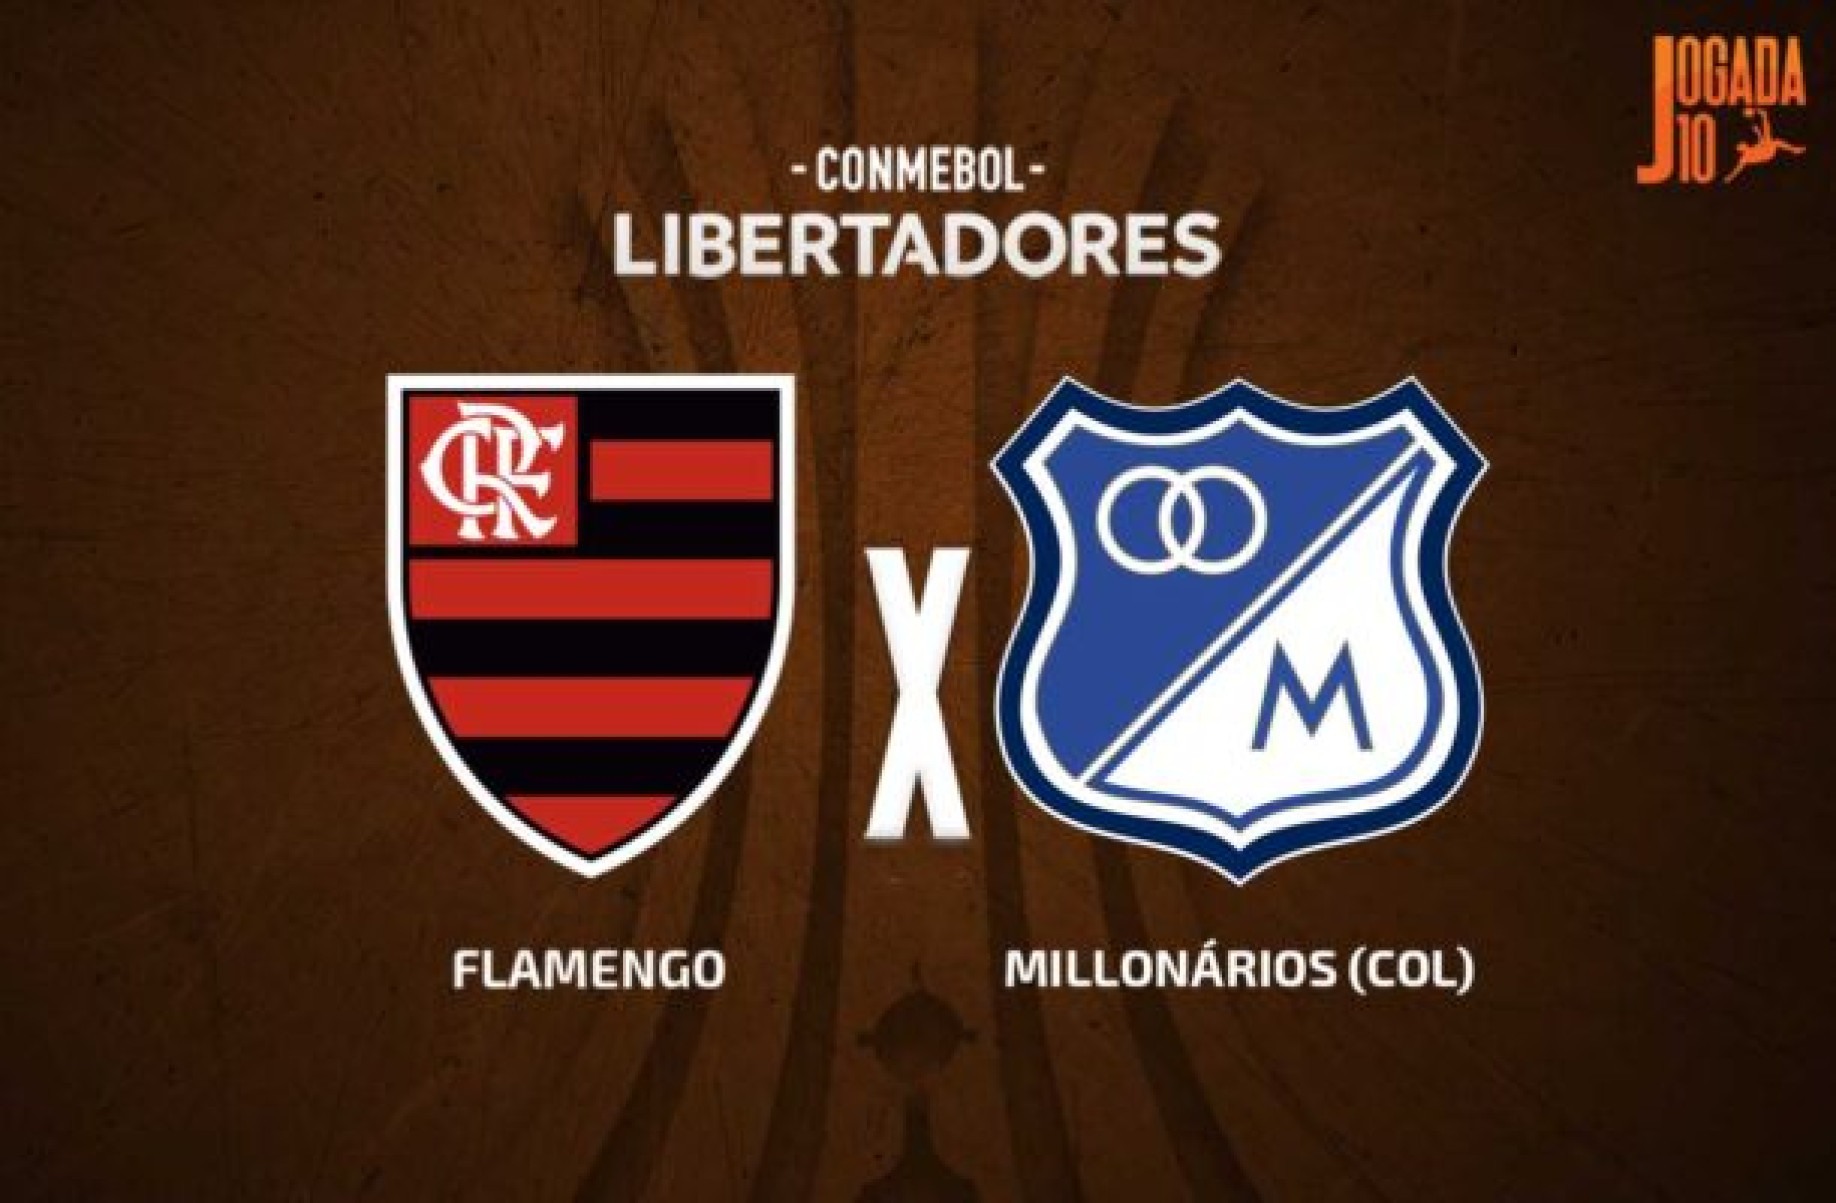 Flamengo x Millonarios, AO VIVO, com a Voz do Esporte, às 19h30